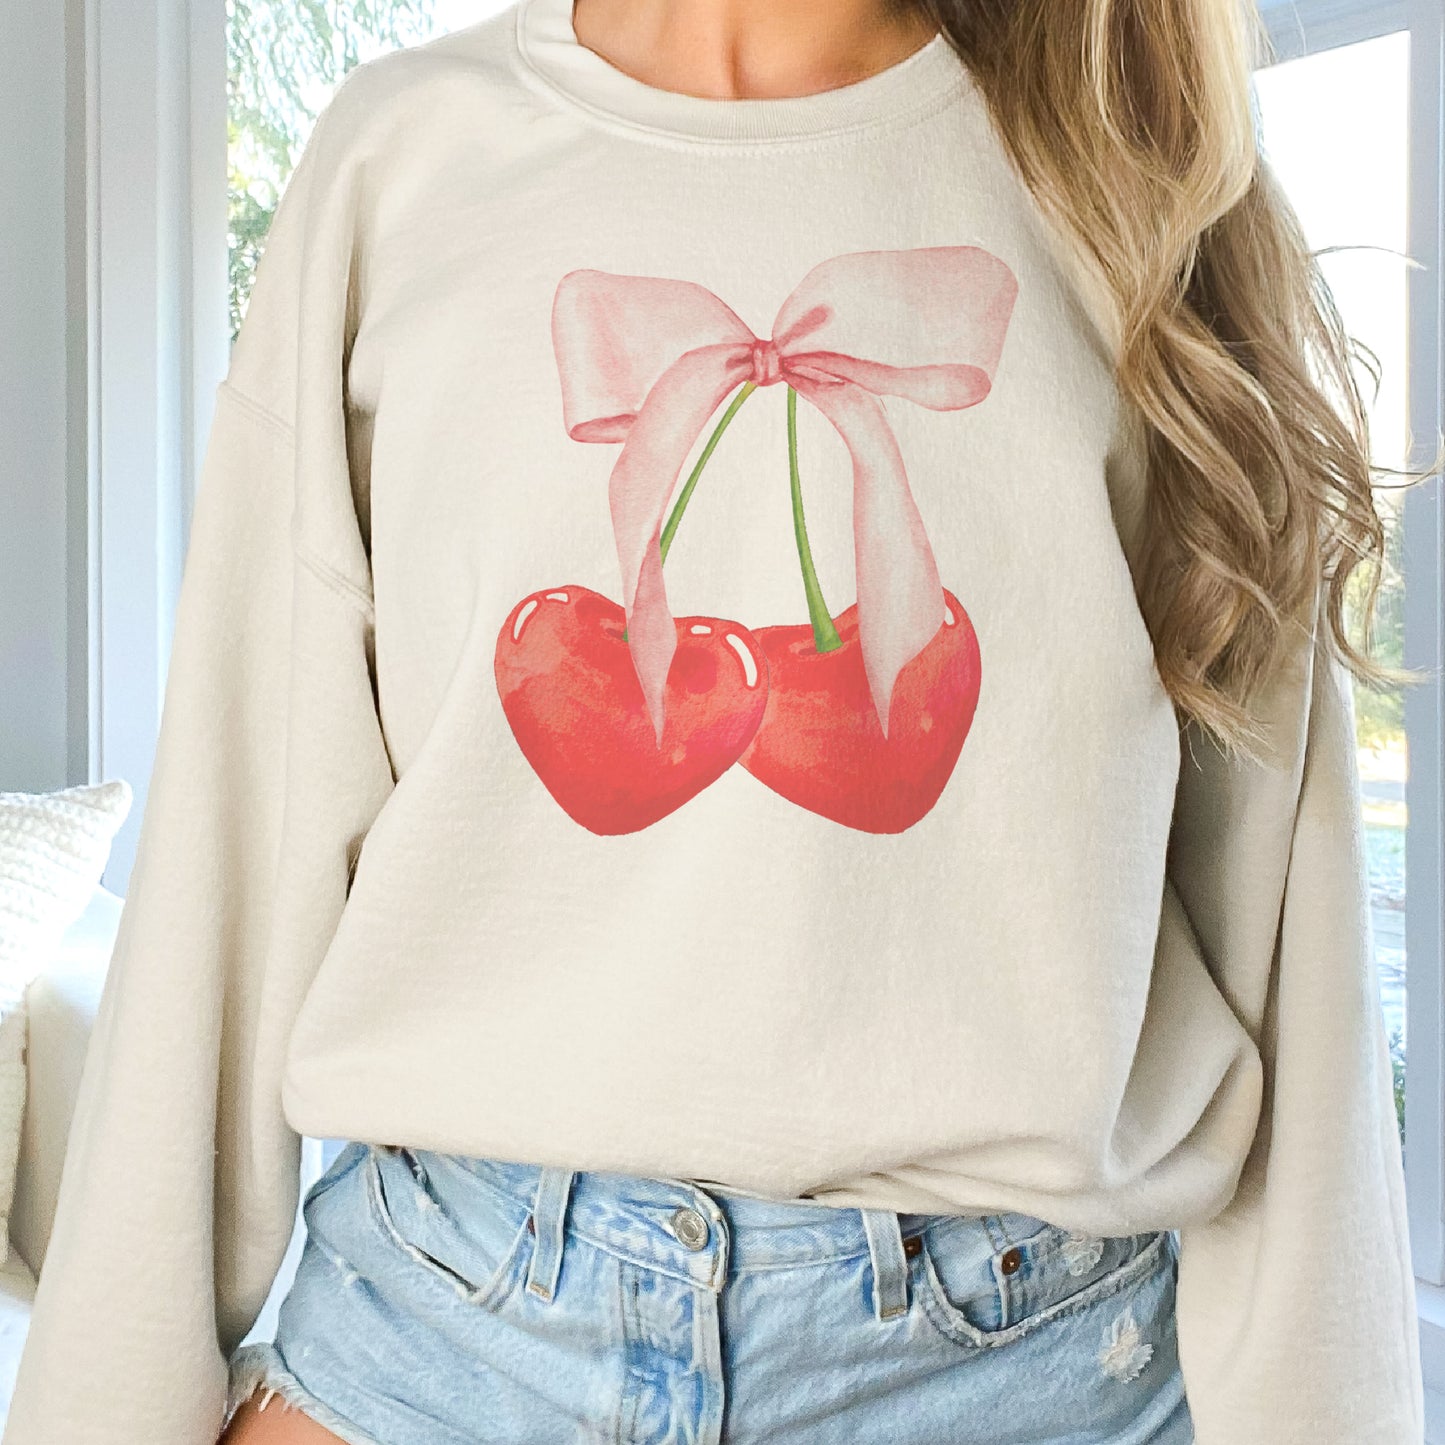 Cherry Valentines Sweatshirt Valentines Day Sweater Cherry Cute Hoodie Soft Sublimation Sweatshirt